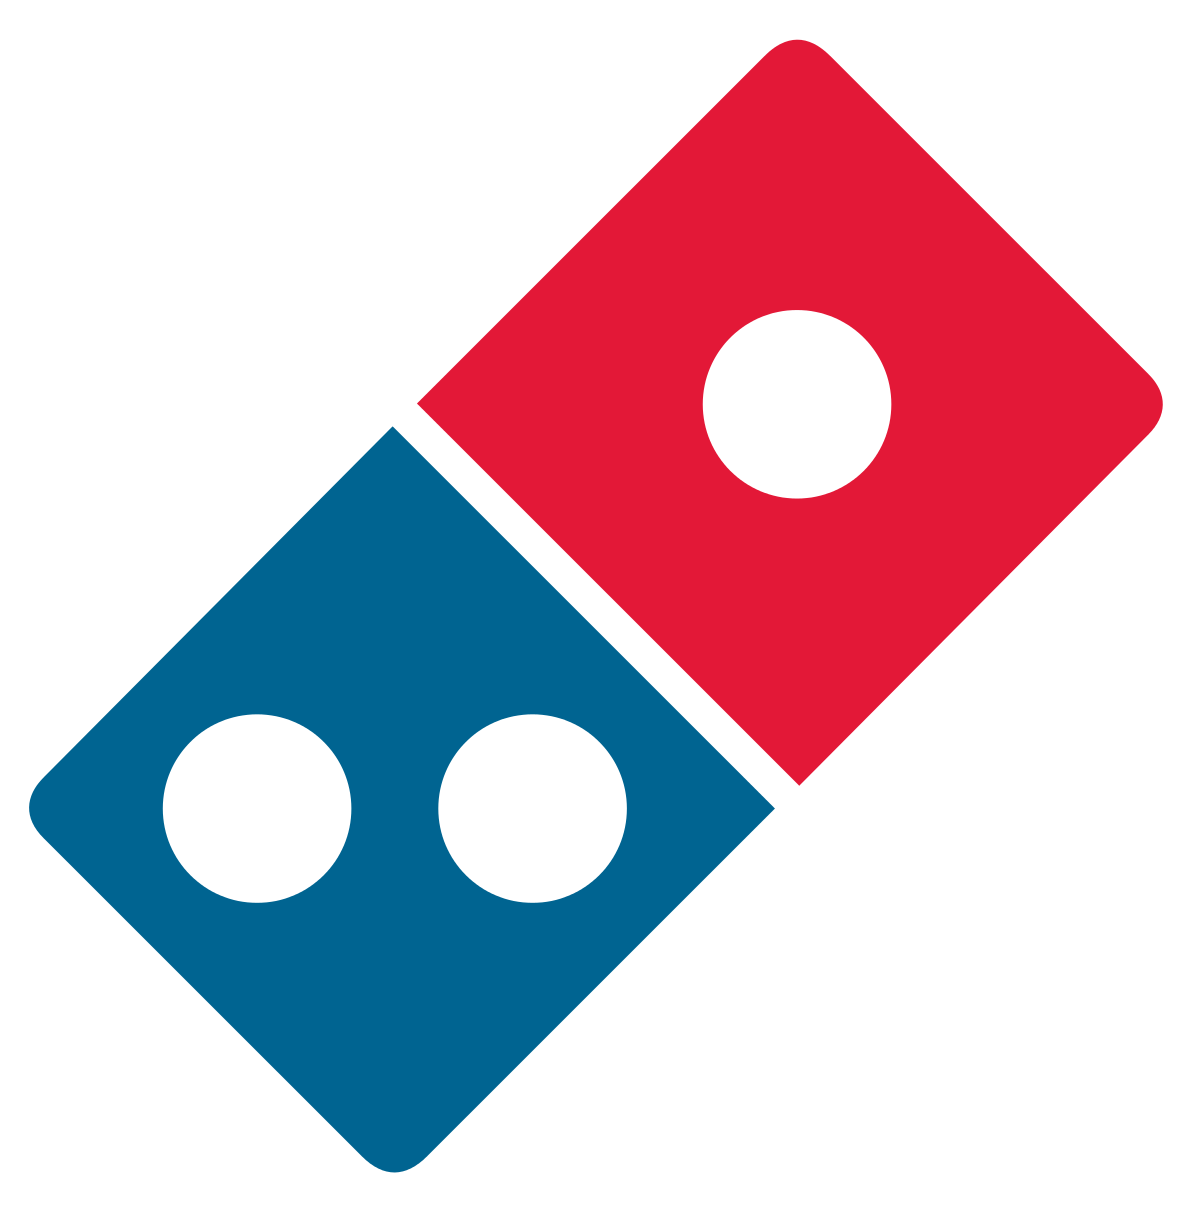 Dominos pizza logo labsJuli